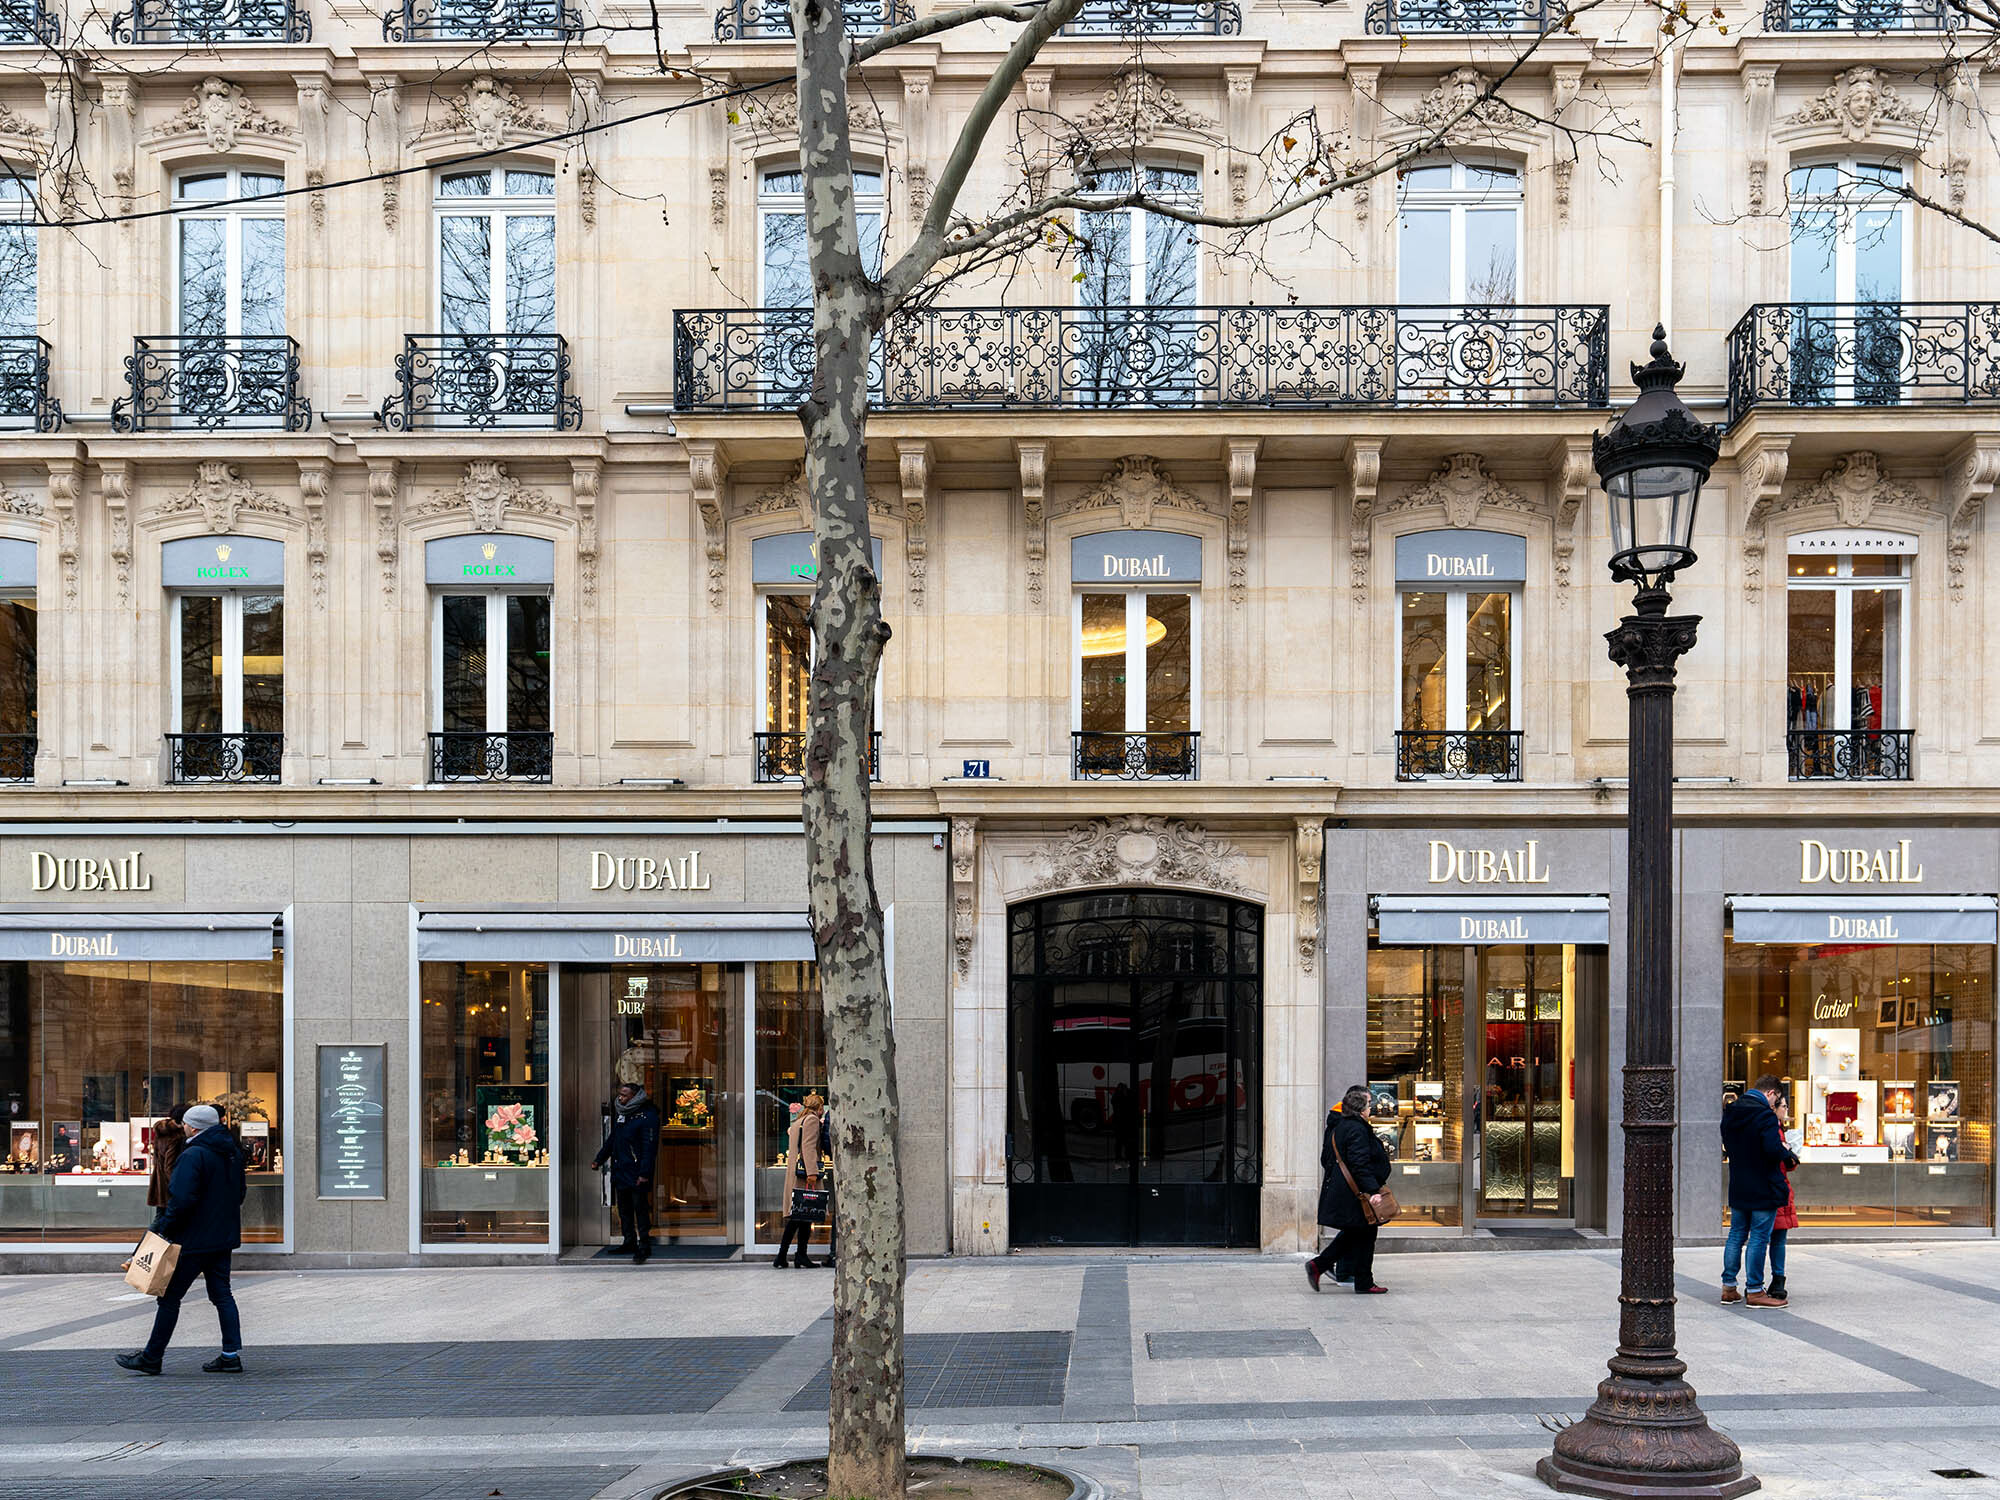 Louis Vuitton Champs Elysées Bracelet